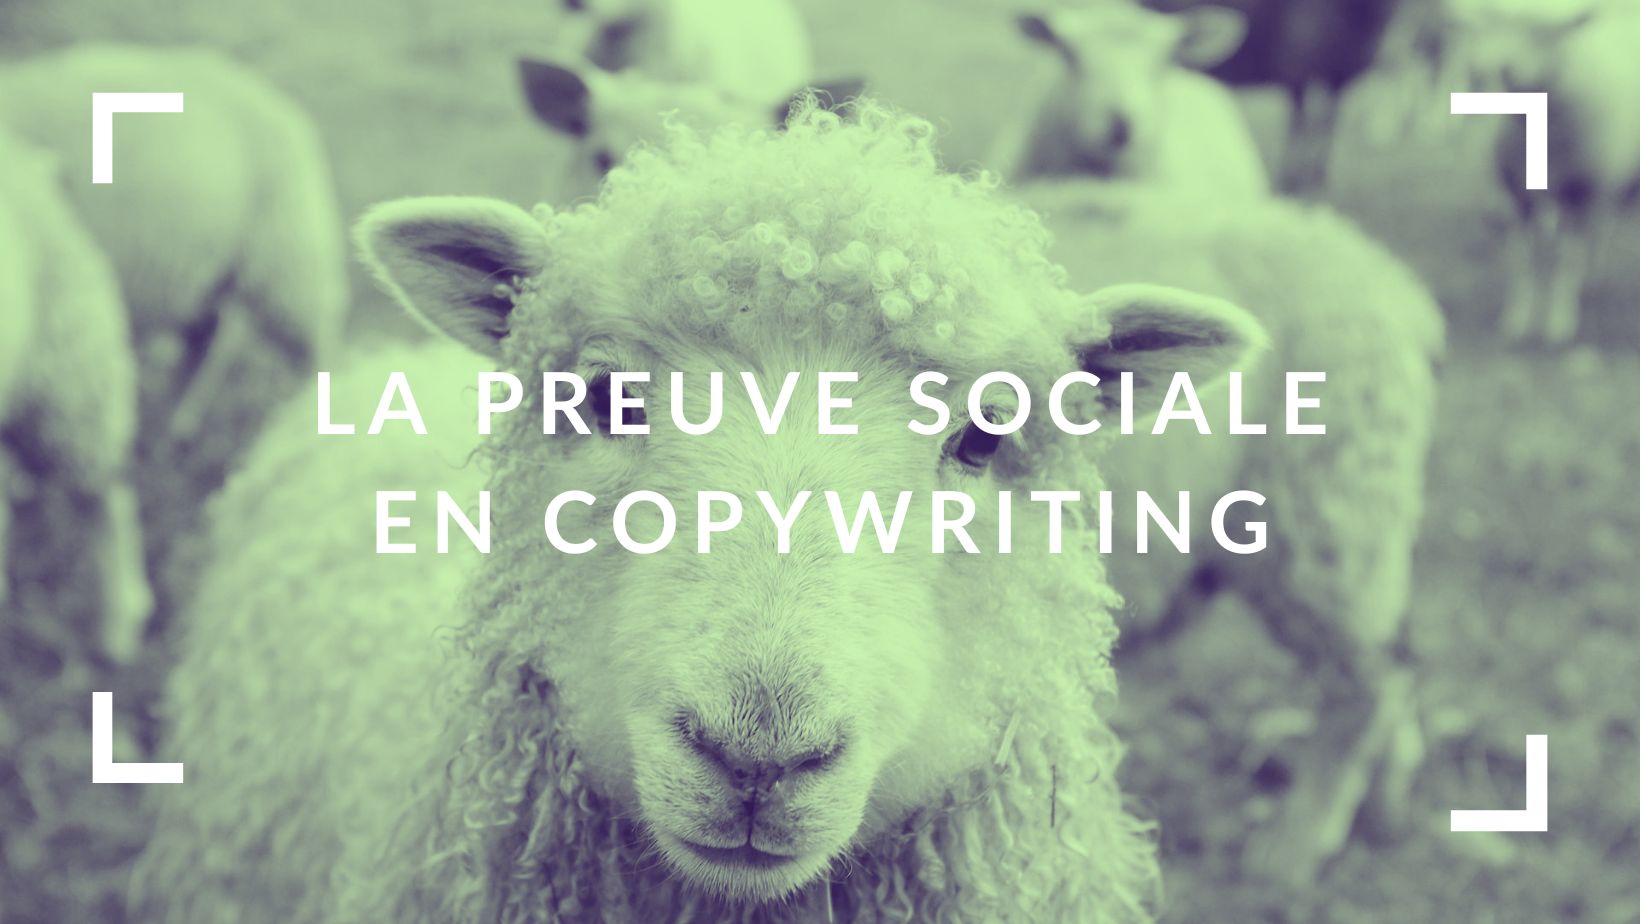 Le copywriting et la preuve sociale | Par Alexandre Montenon